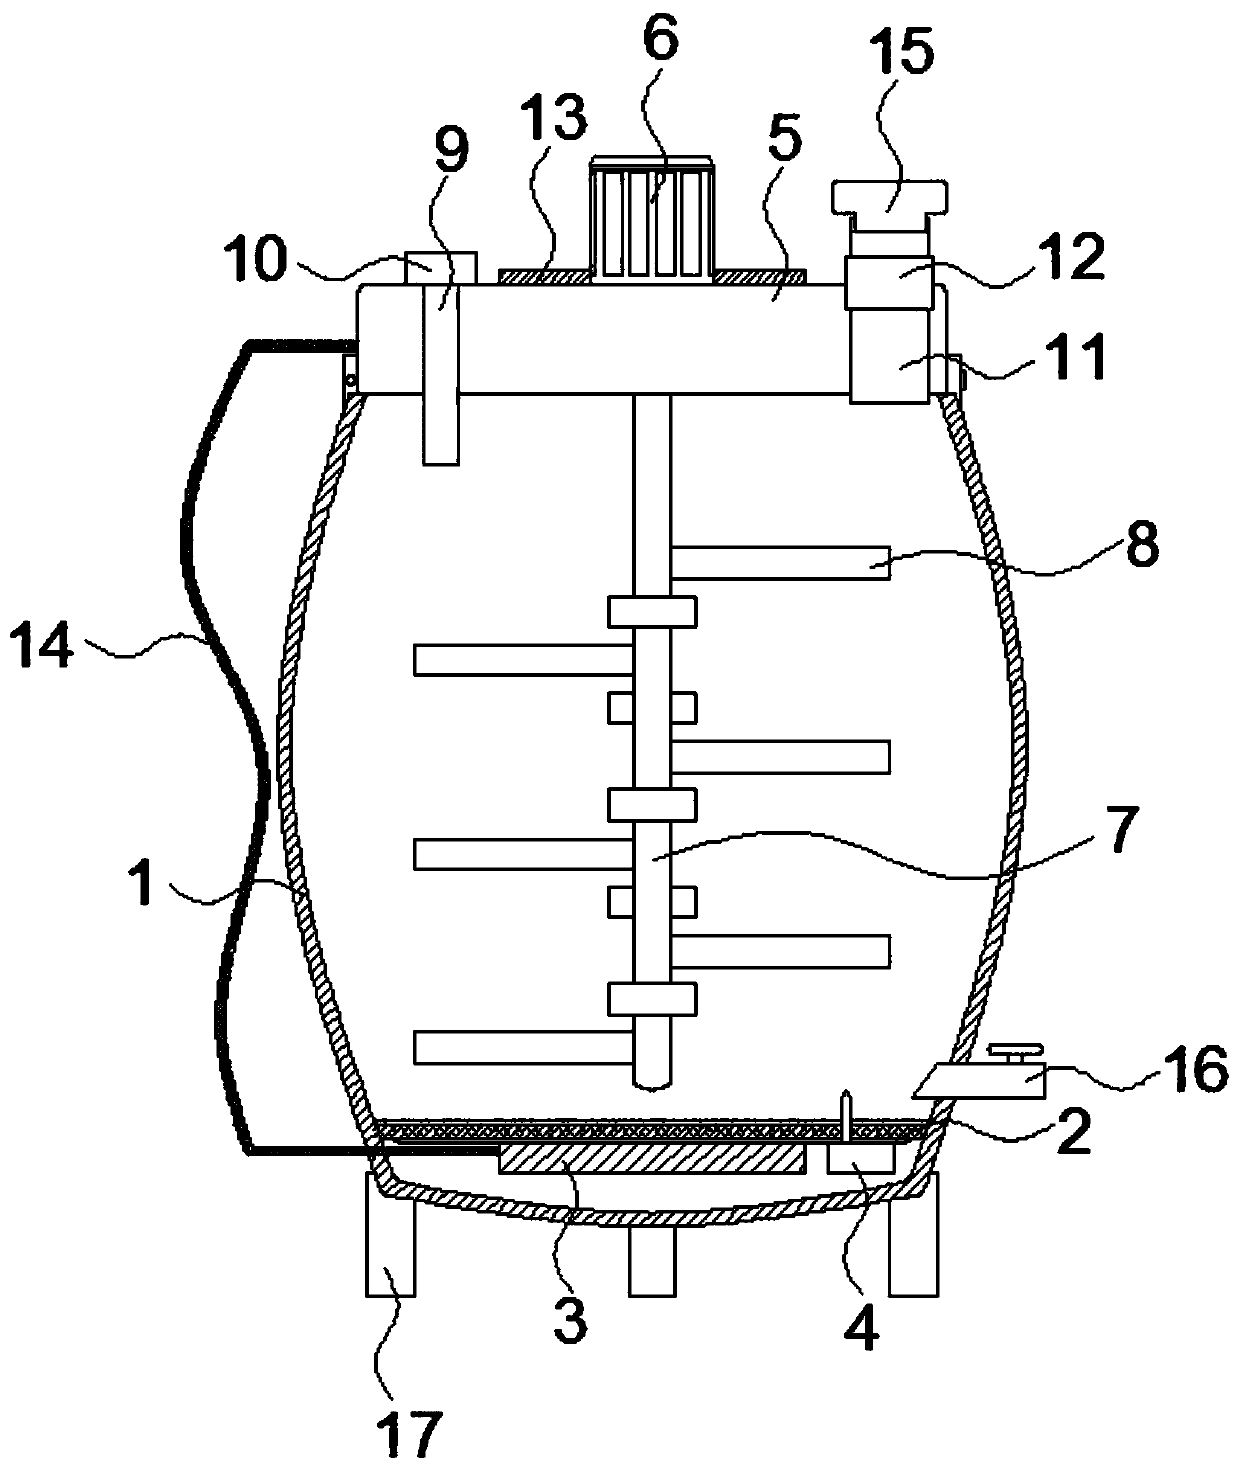 Novel efficient hydrolysis kettle